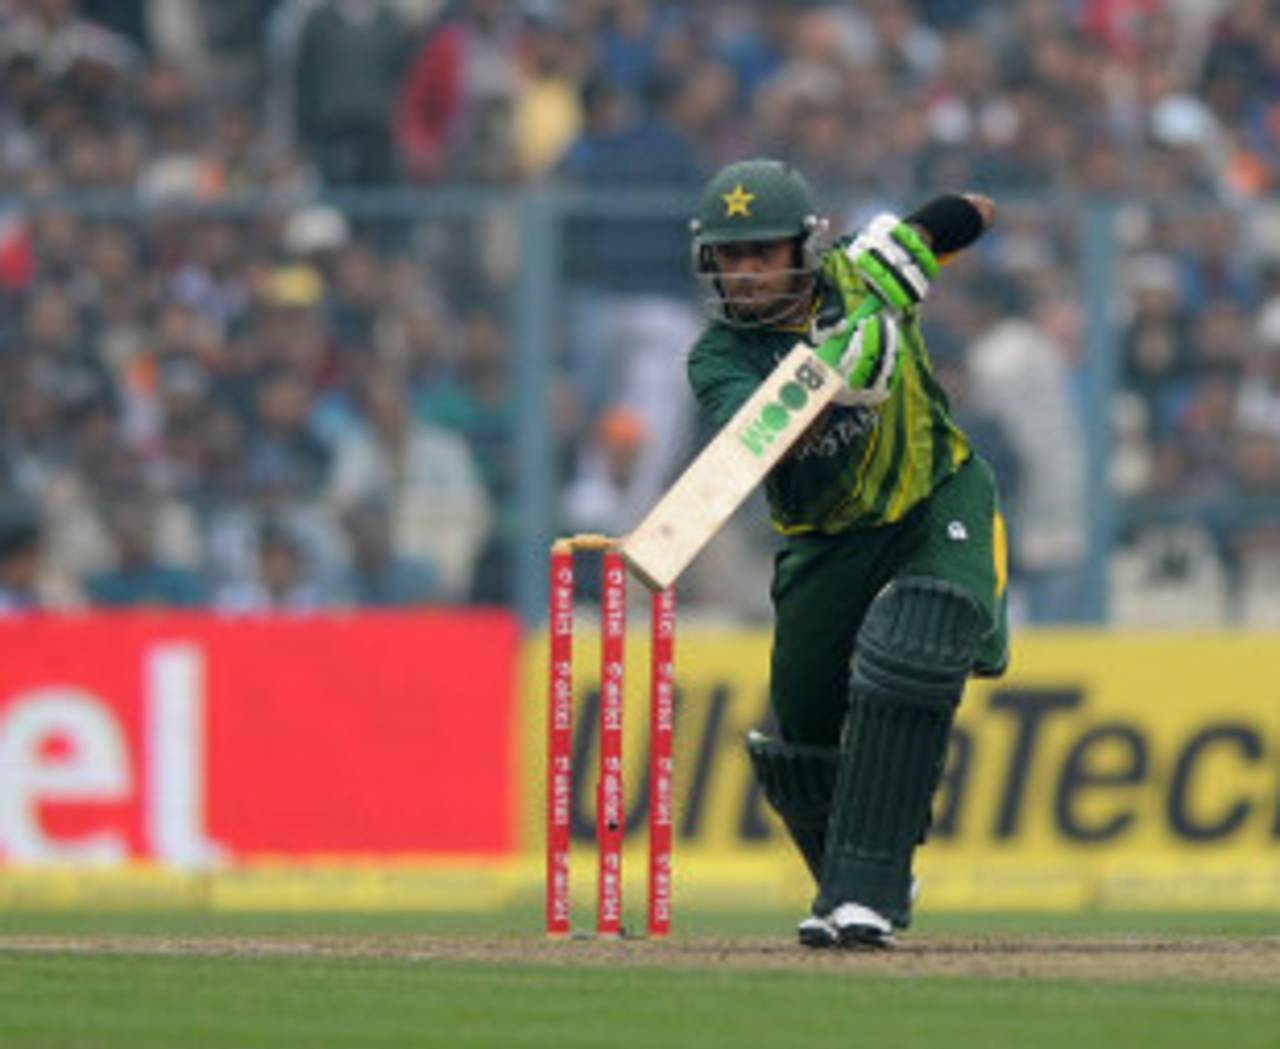 Mohammad Hafeez made 76, India v Pakistan, 2nd ODI, Kolkata, January 3, 2013